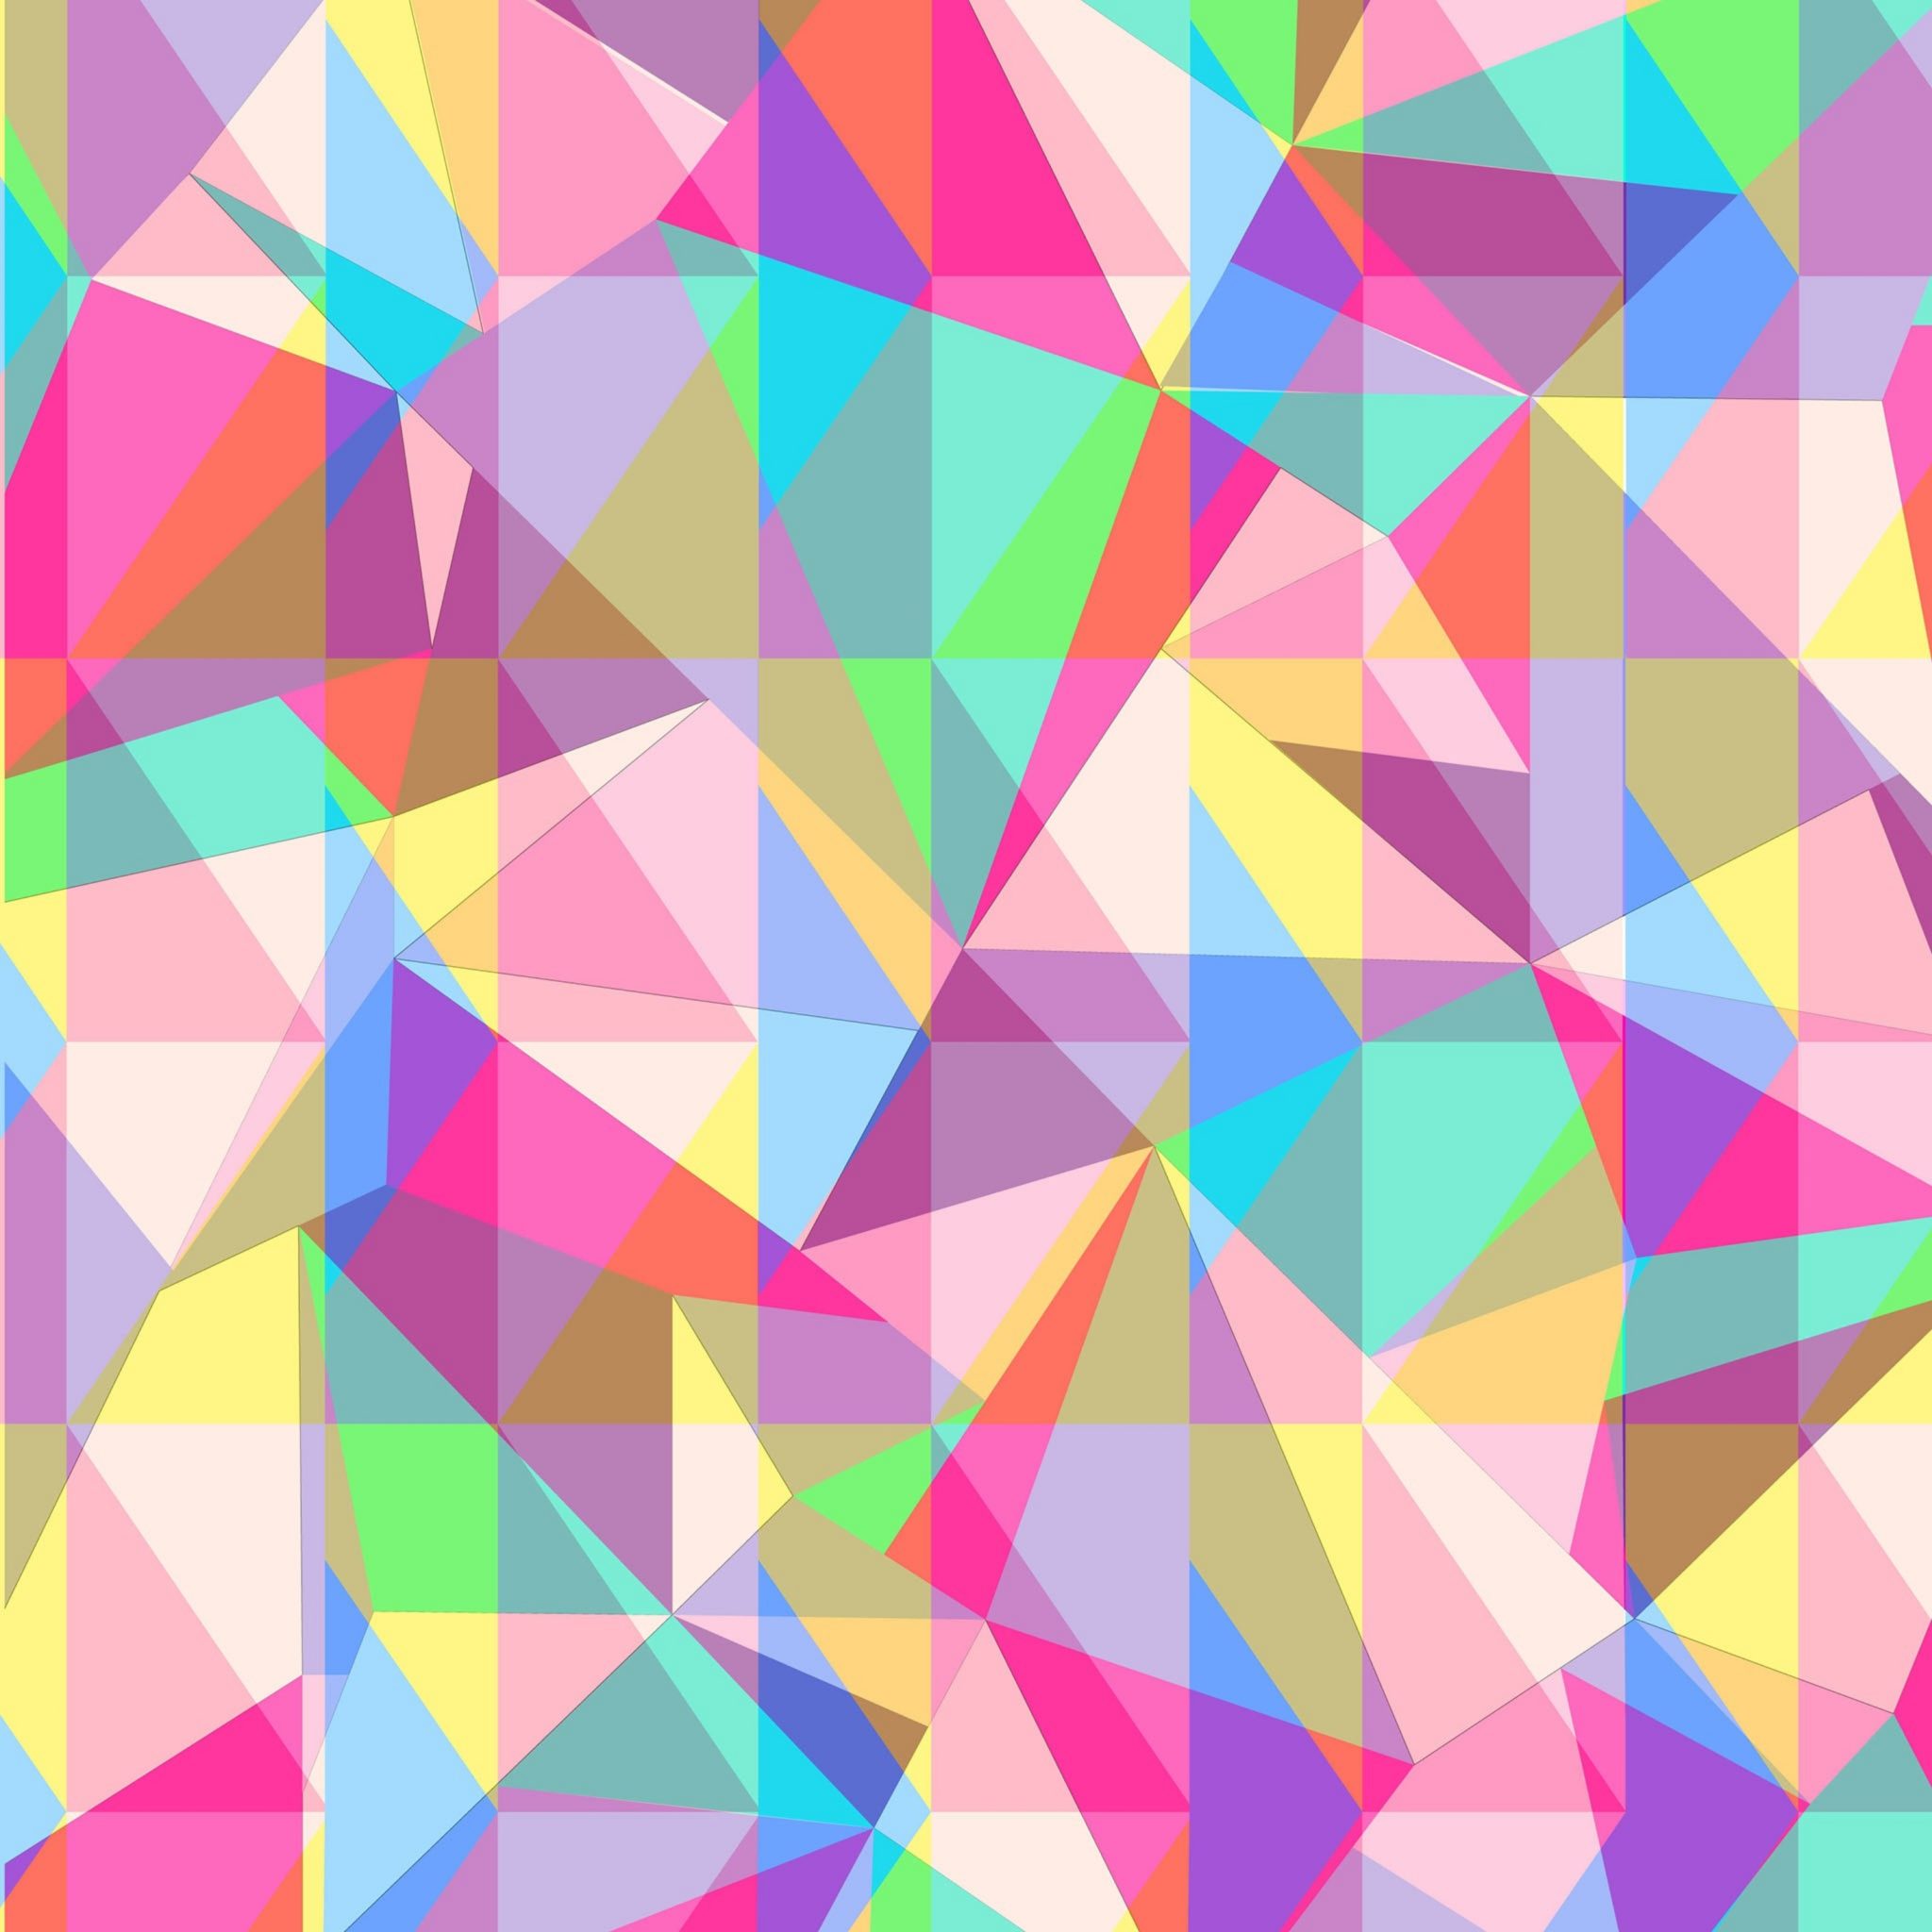 2048x2048 wallpapers iPad retina Color Triangle iPad Wallpaper 2048x2048 pixels resolution